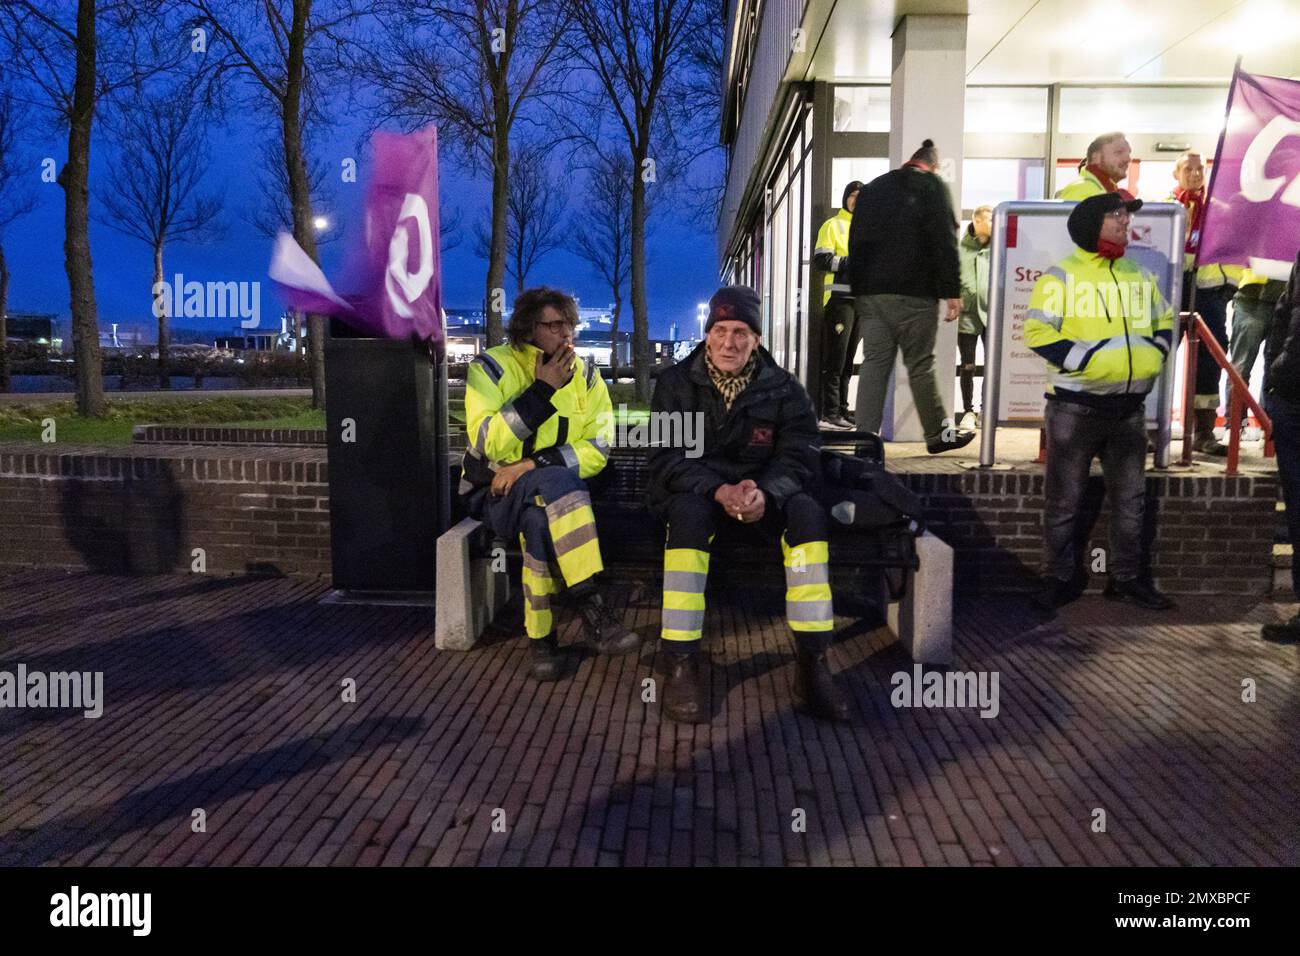 UTRECHT - Mitarbeiter der Stadtreinigung in der Gemeinde Utrecht streiken nach einem besseren Tarifvertrag. Die Straßenkehrer, Müllsammler und die Leute, die die Kanäle sauber halten, haben wieder aufgehört zu arbeiten. ANPANP JEROEN JUMELET niederlande raus - belgien raus Stockfoto